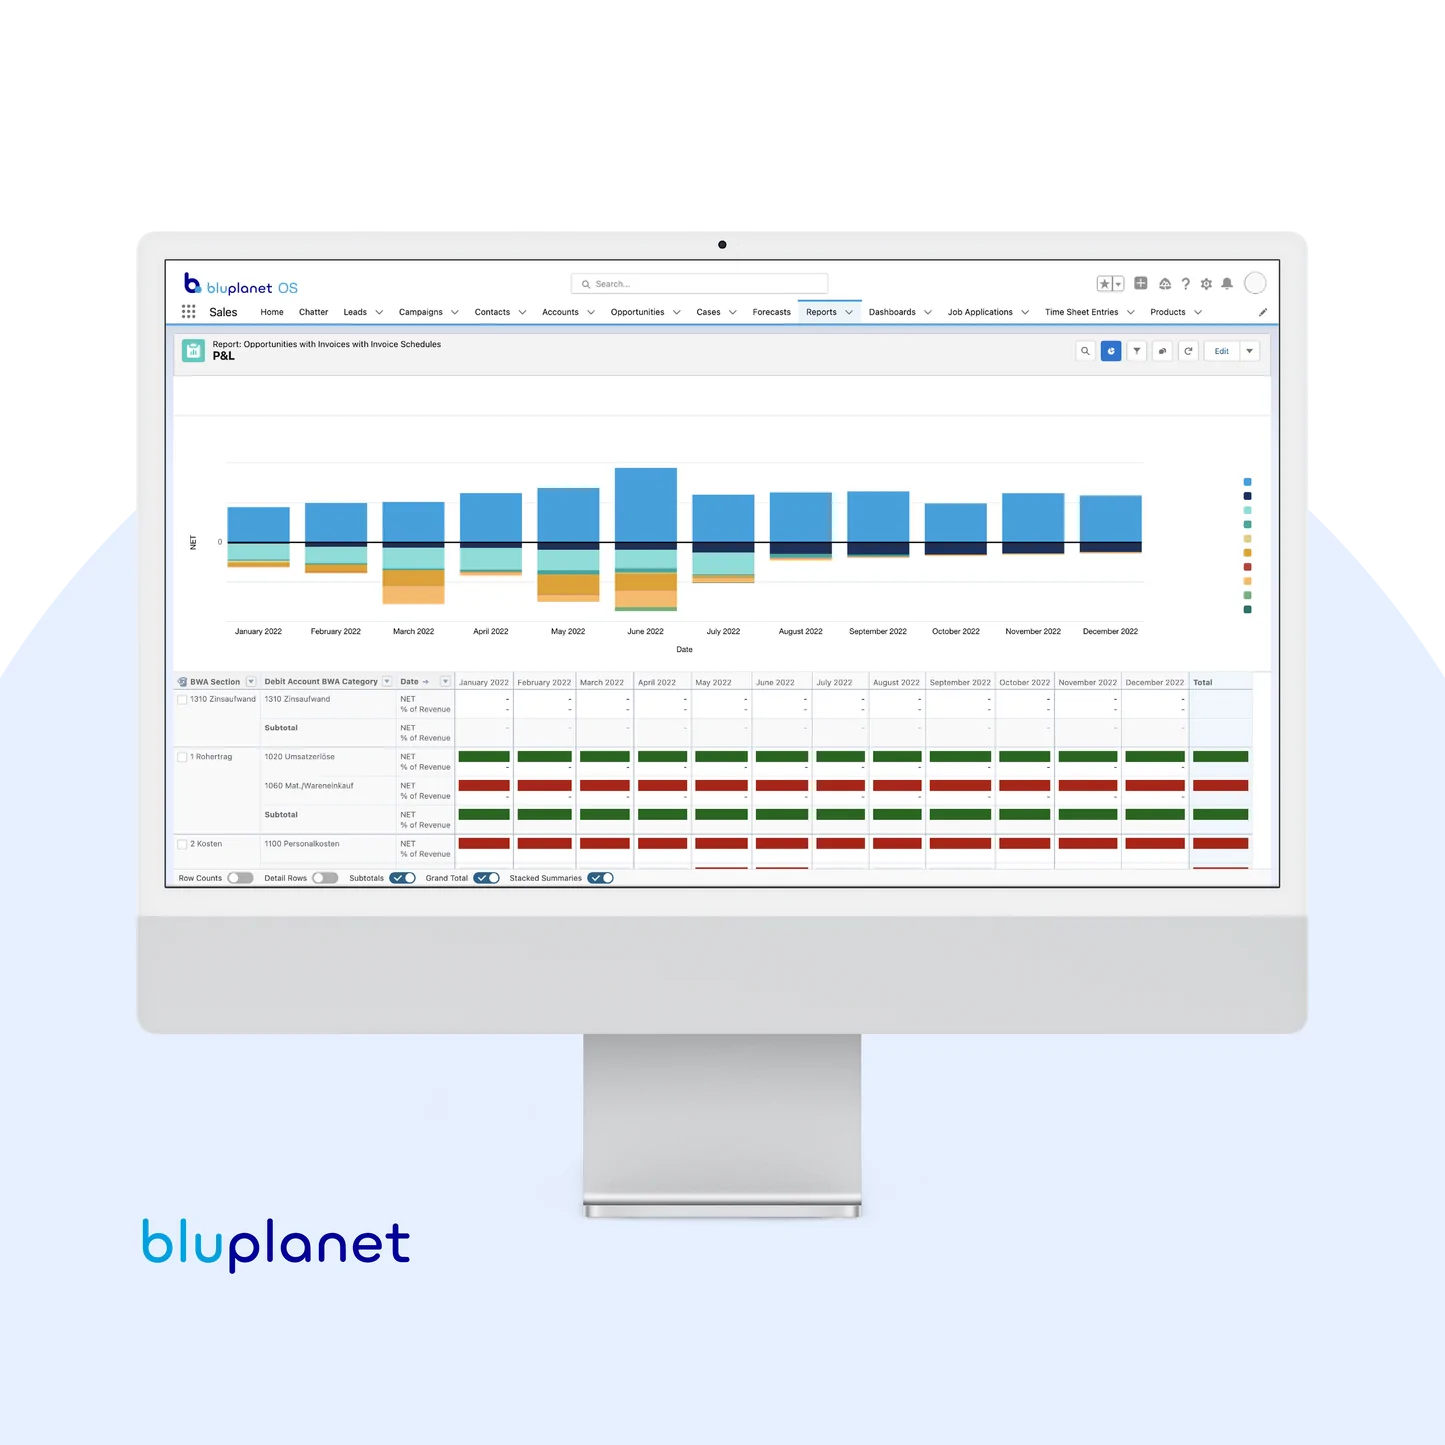 bluplanet OS: Salesforce Add-on (ATS + Finance)